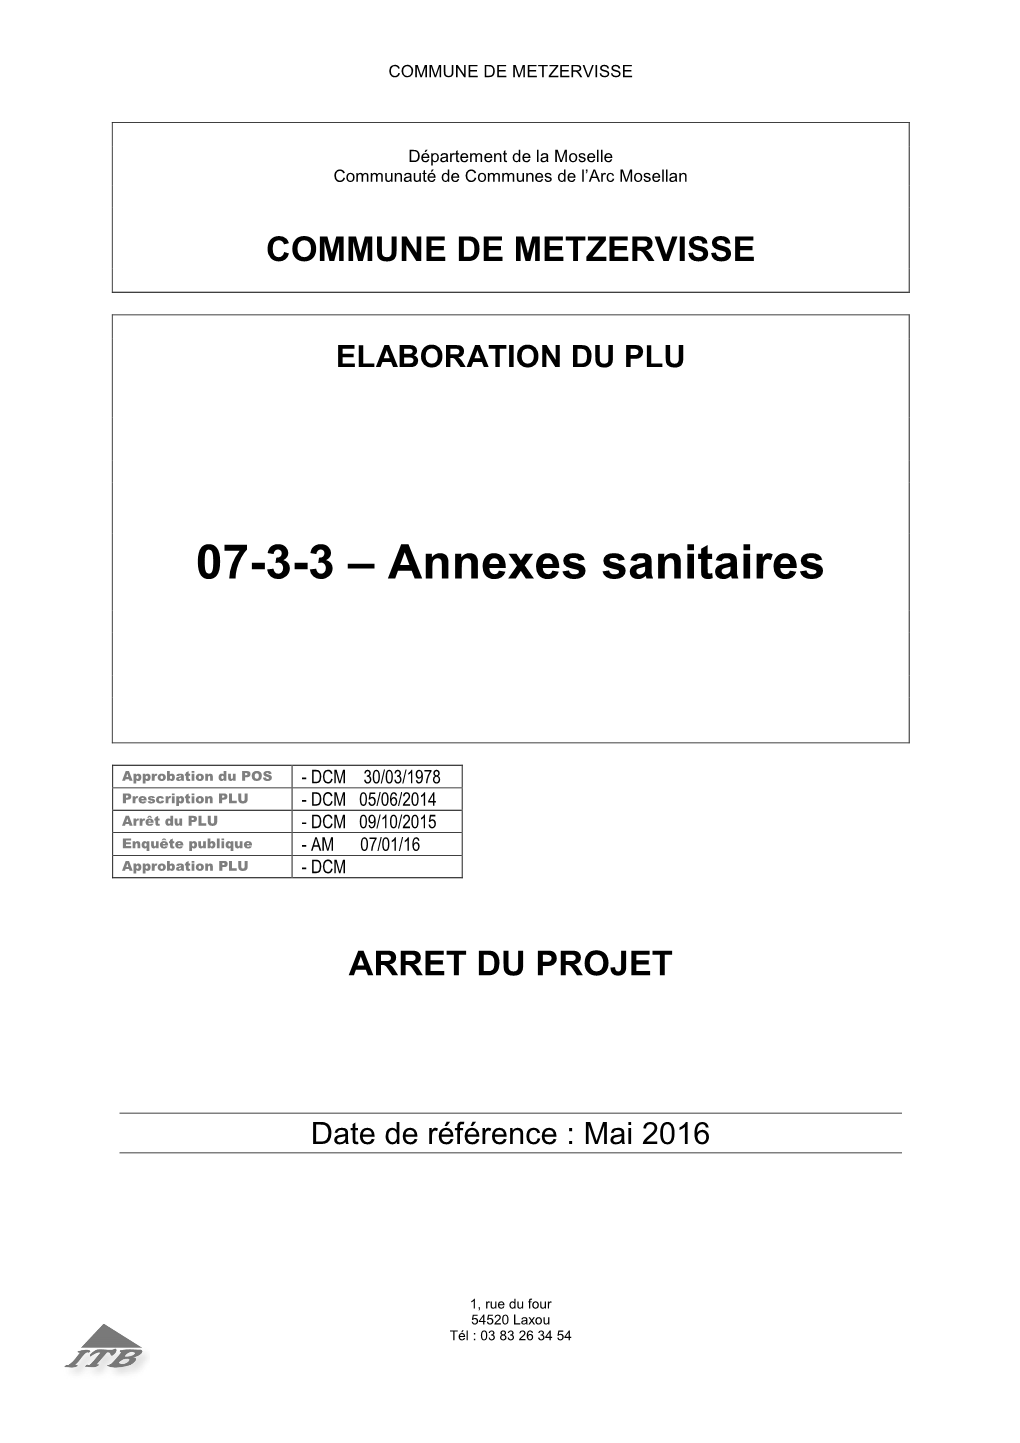 07-3-3-AR-Metzervisse-Annexes Sanitaires 02102015